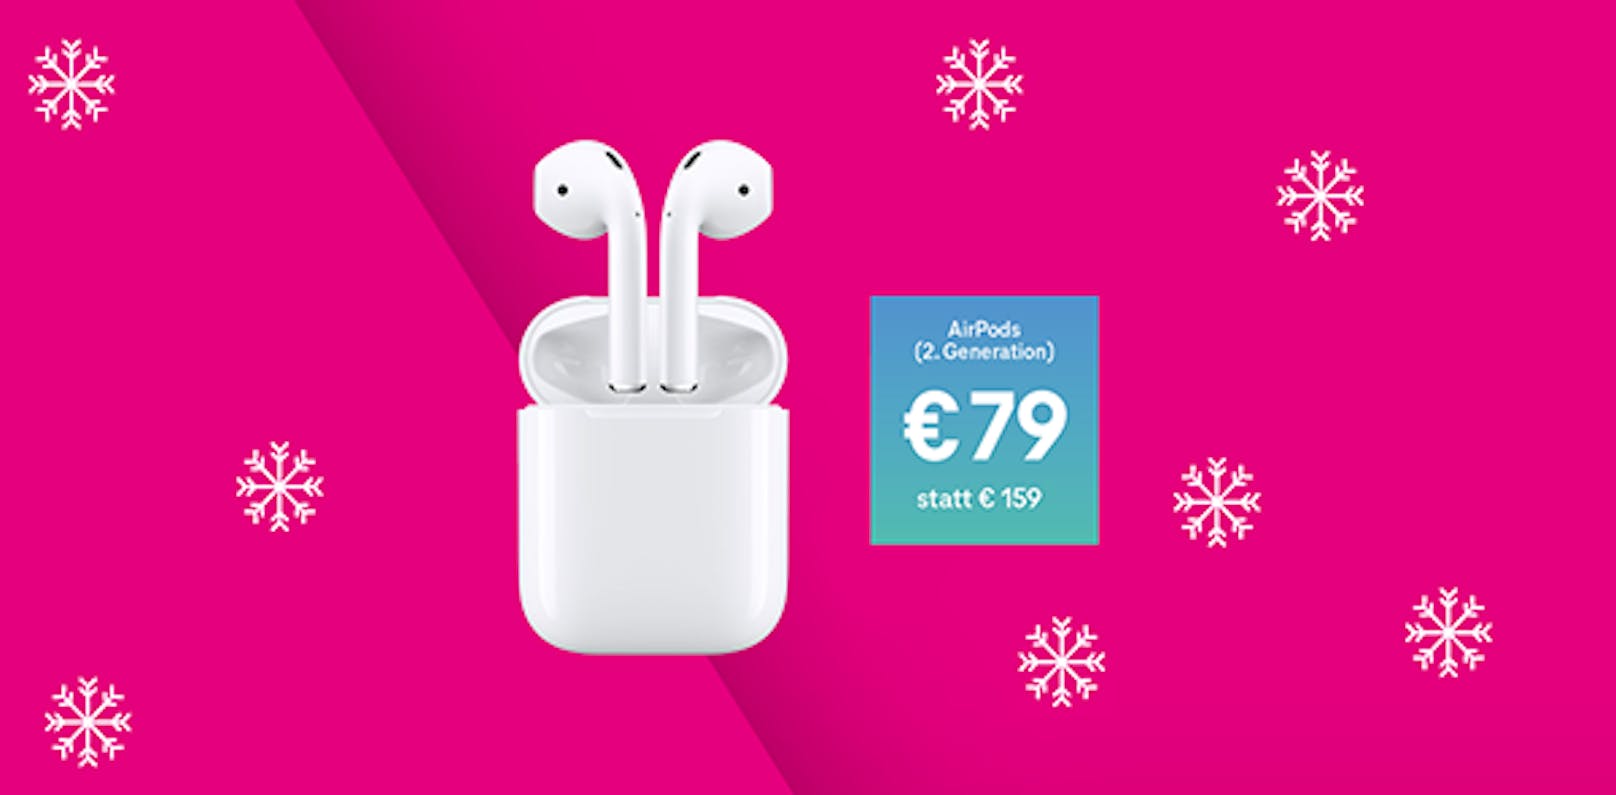 Für kurze Zeit gibt es die Apple AirPods (2. Generation) zum einmaligen Preis von 79 Euro statt 159 Euro.